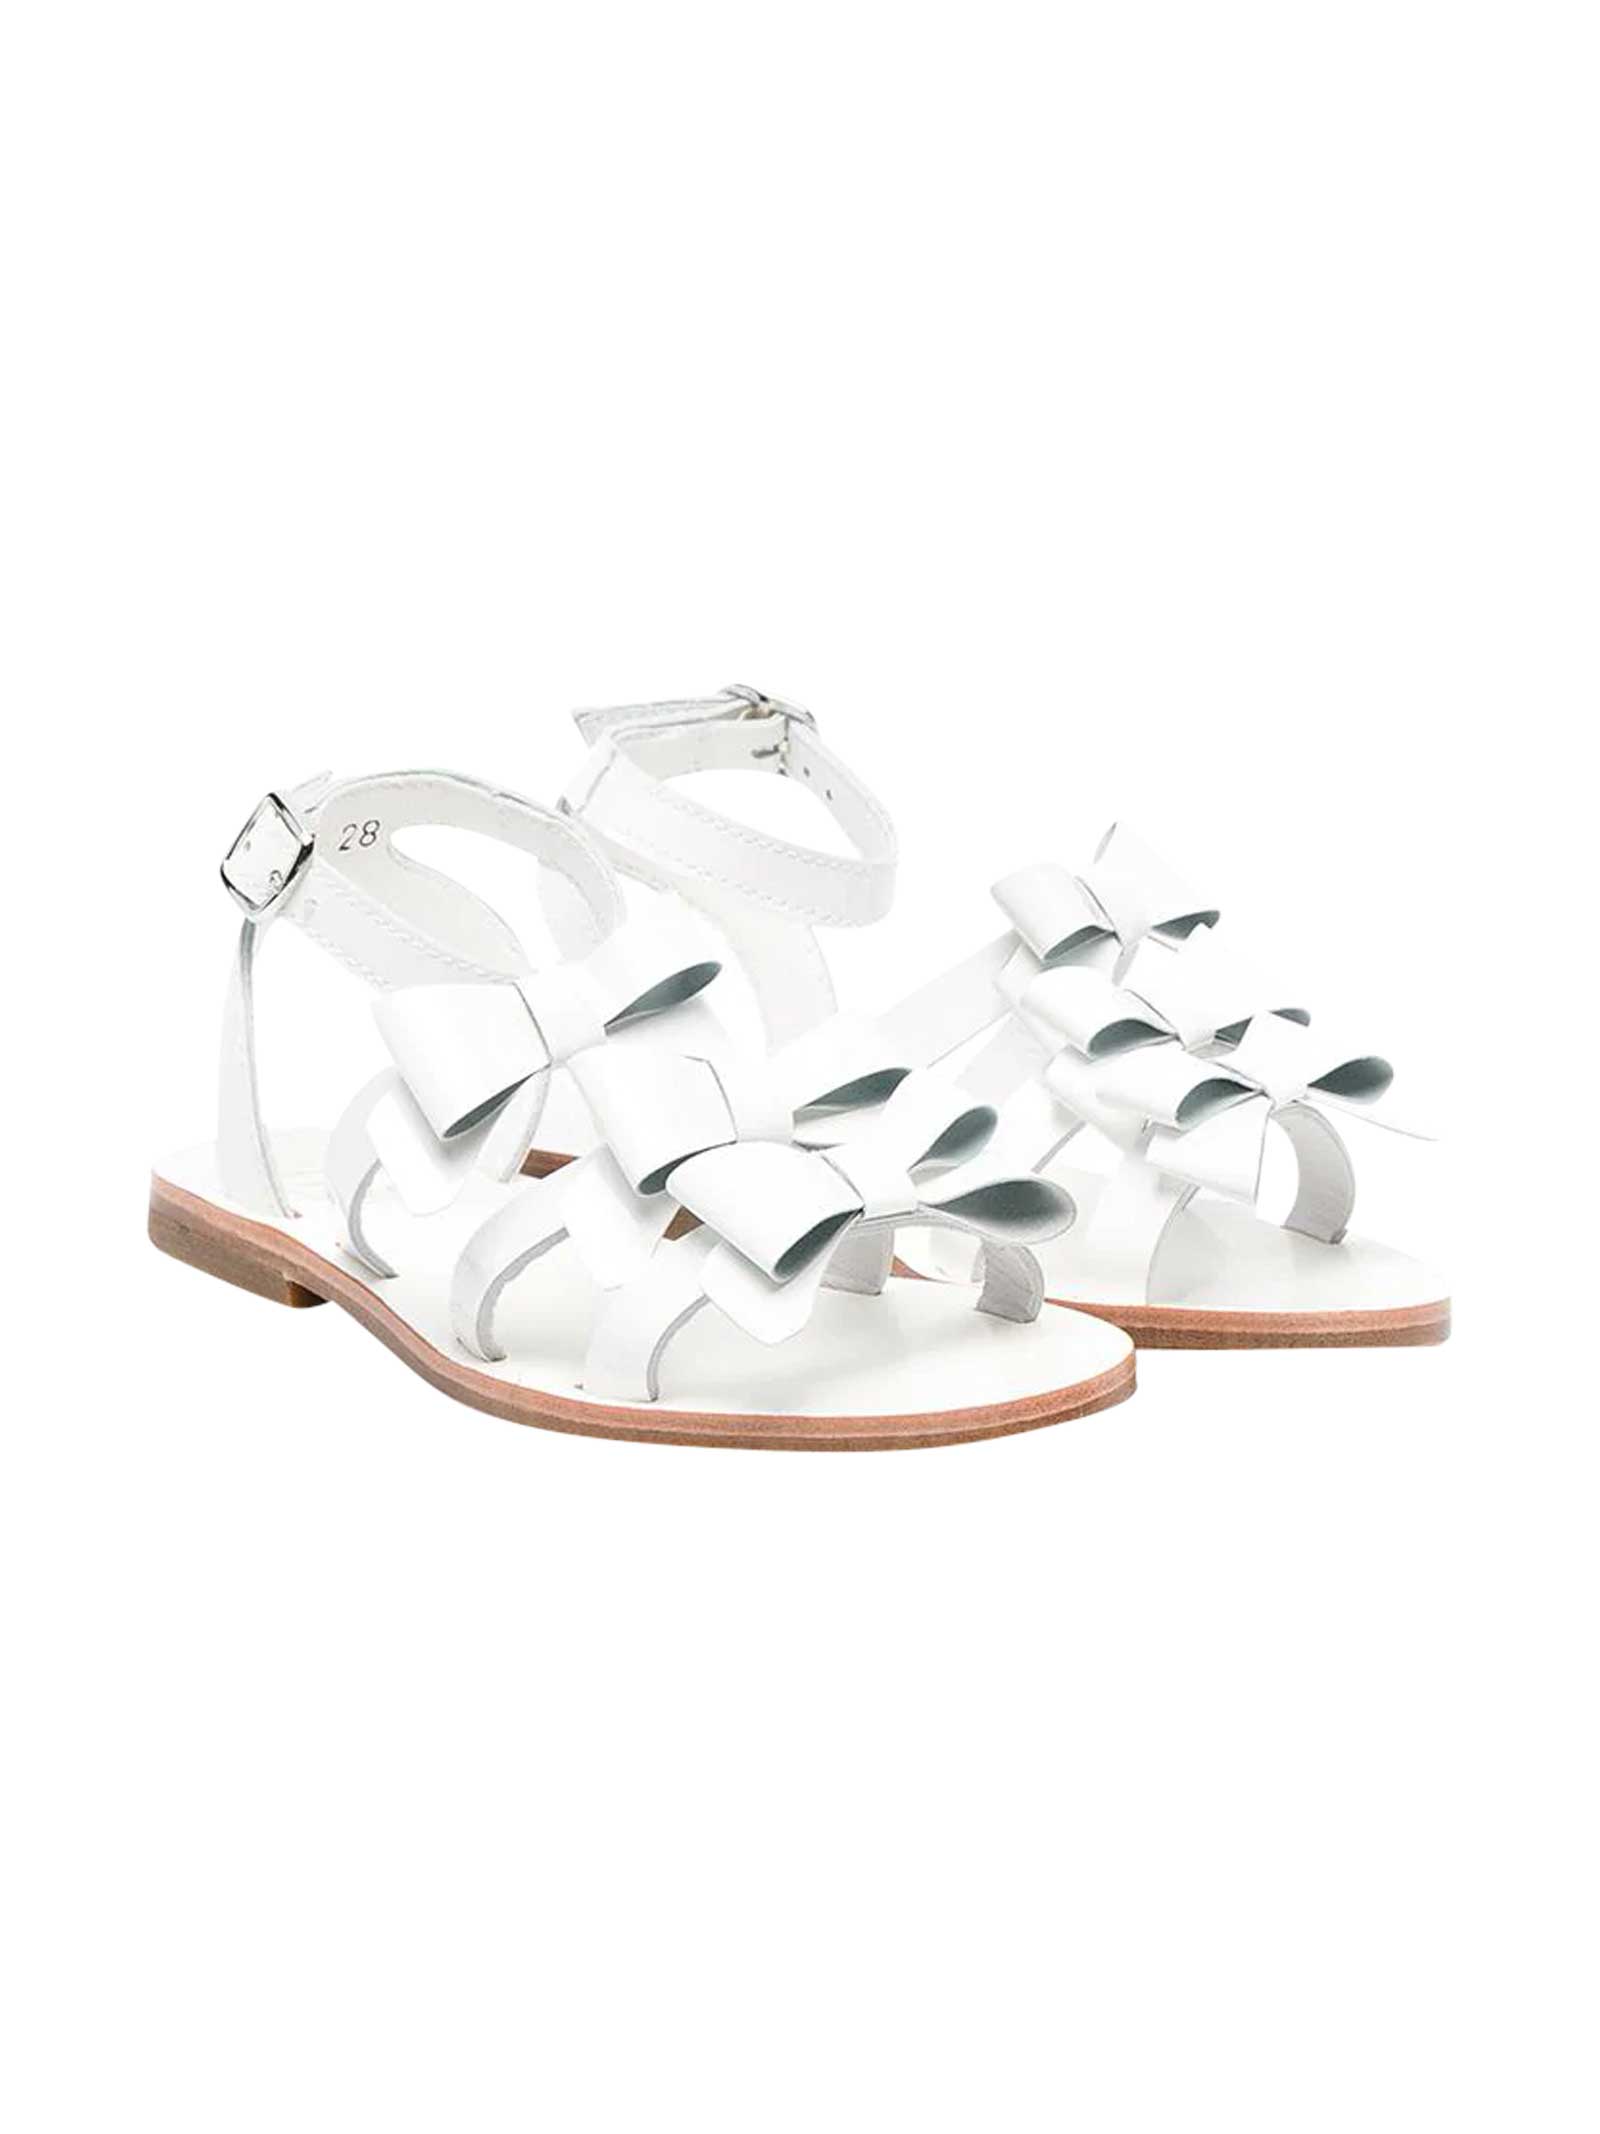 Gallucci White Sandals